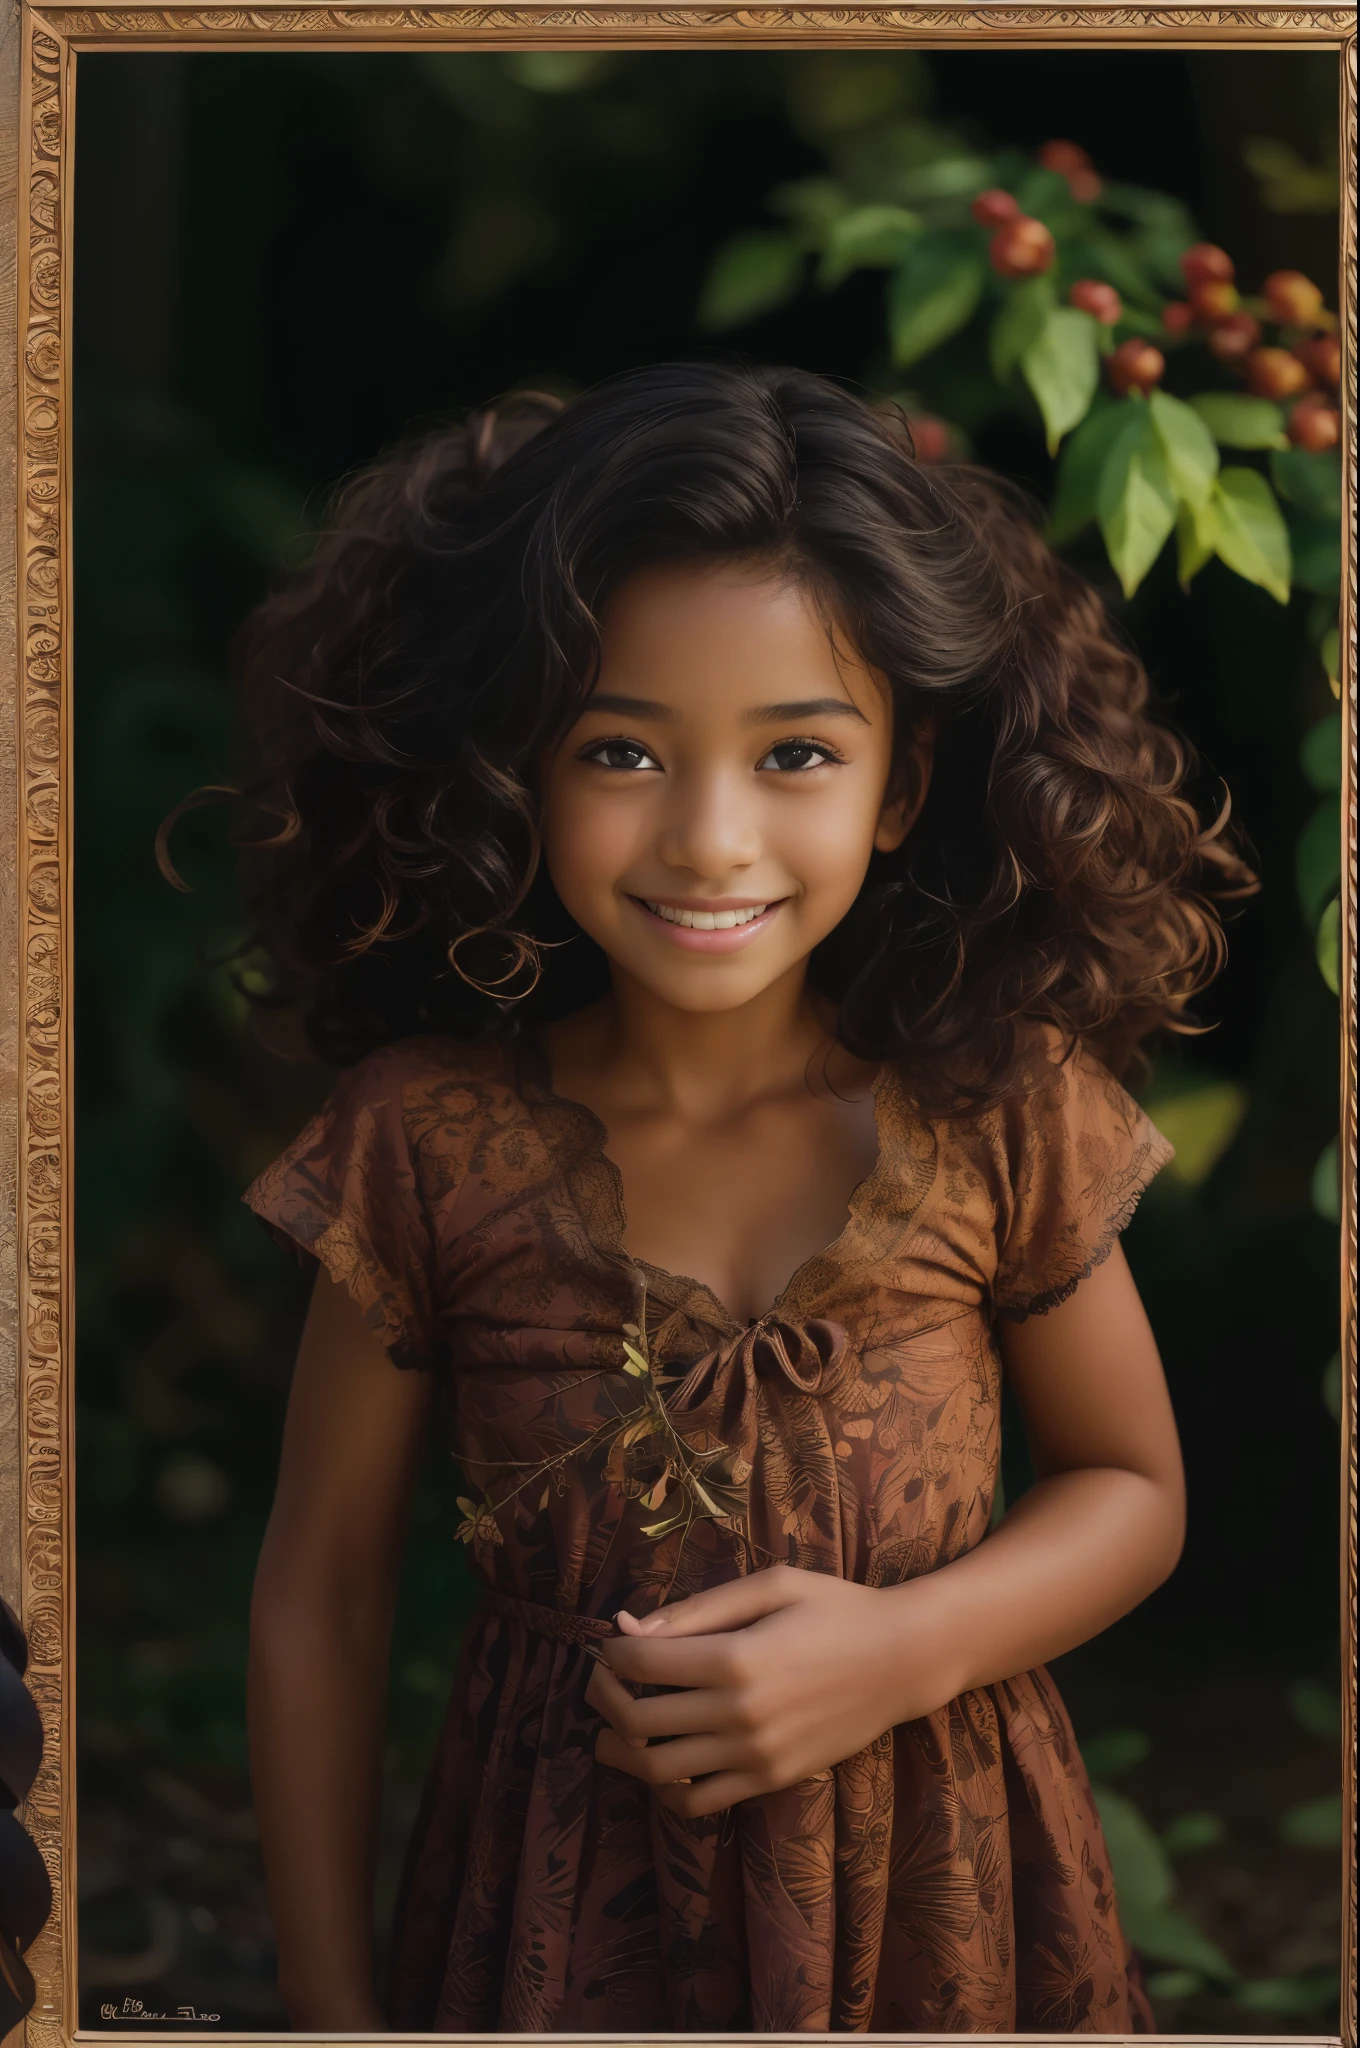 (Портрет, редакционная фотография красивой чернокожей девочки 4 лет, очаровательное лицо, длинные каштановые вьющиеся волосы, ((карие глаза)), Никон Д850, фотография из фильма ,4 Кодак Портра 400 ,камера ф1.6 линз ,насыщенные цвета ,гиперреалистичный ,реалистичная текстура, Драматическое освещение, (Очень детализированное лицо:1.4), прекрасные глаза, Реалистичный ирис, идеальные зубы, (улыбка:0.7), (фон темный, тень листьев), (расщепление)
